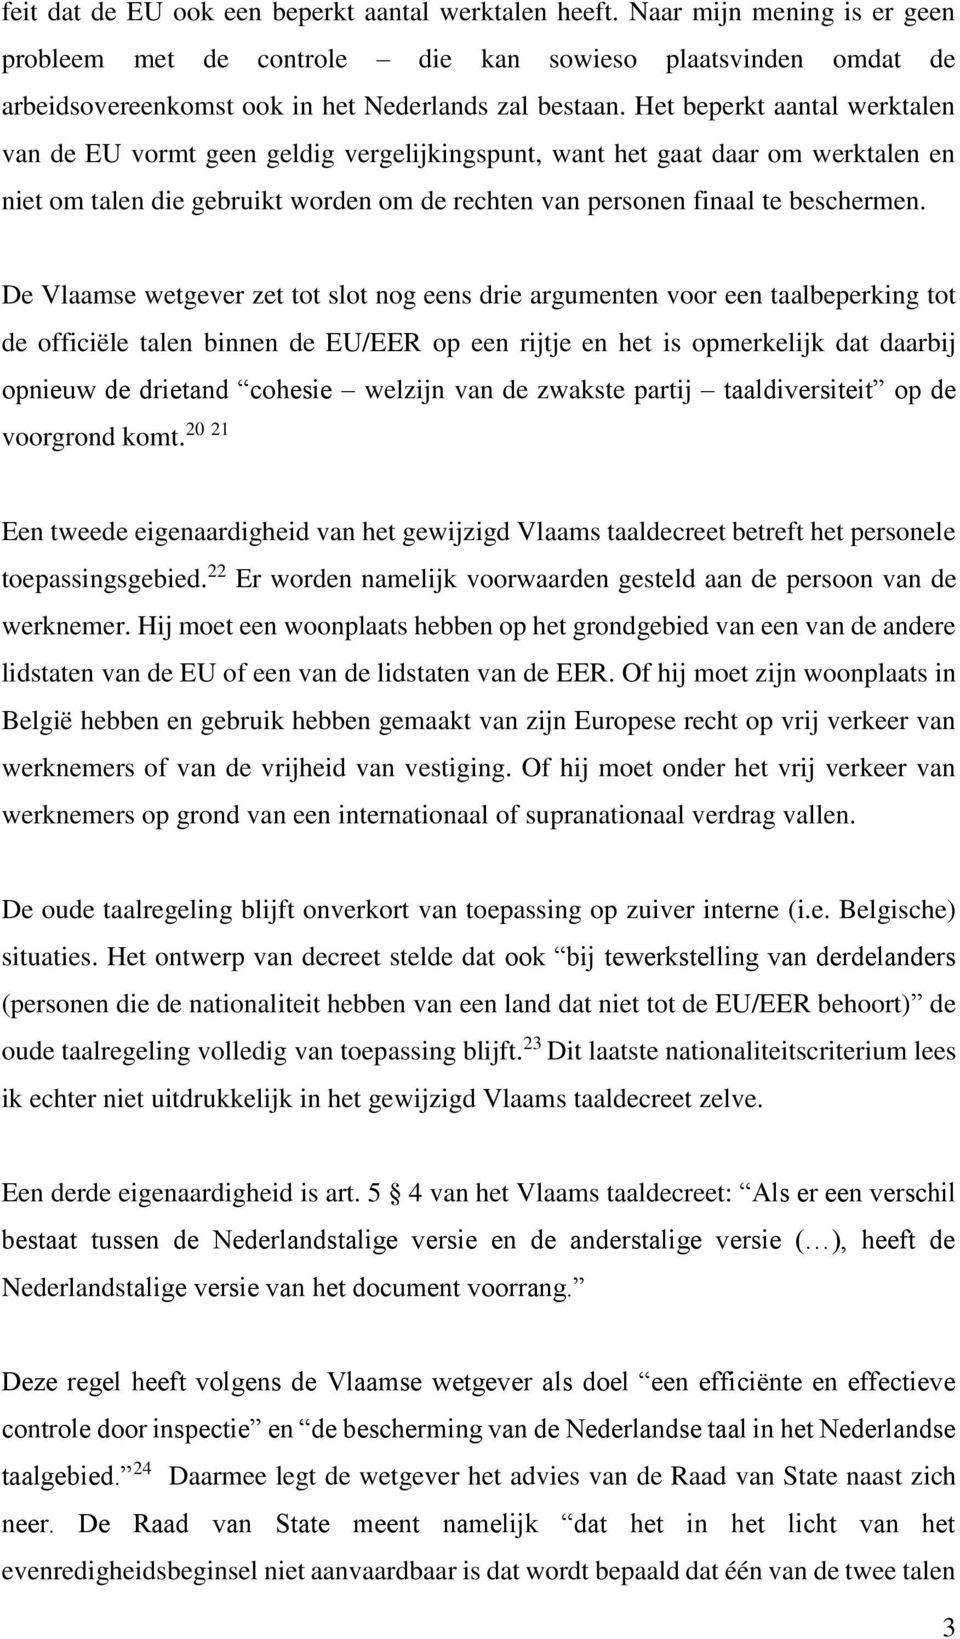 De Vlaamse wetgever zet tot slot nog eens drie argumenten voor een taalbeperking tot de officiële talen binnen de EU/EER op een rijtje en het is opmerkelijk dat daarbij opnieuw de drietand cohesie